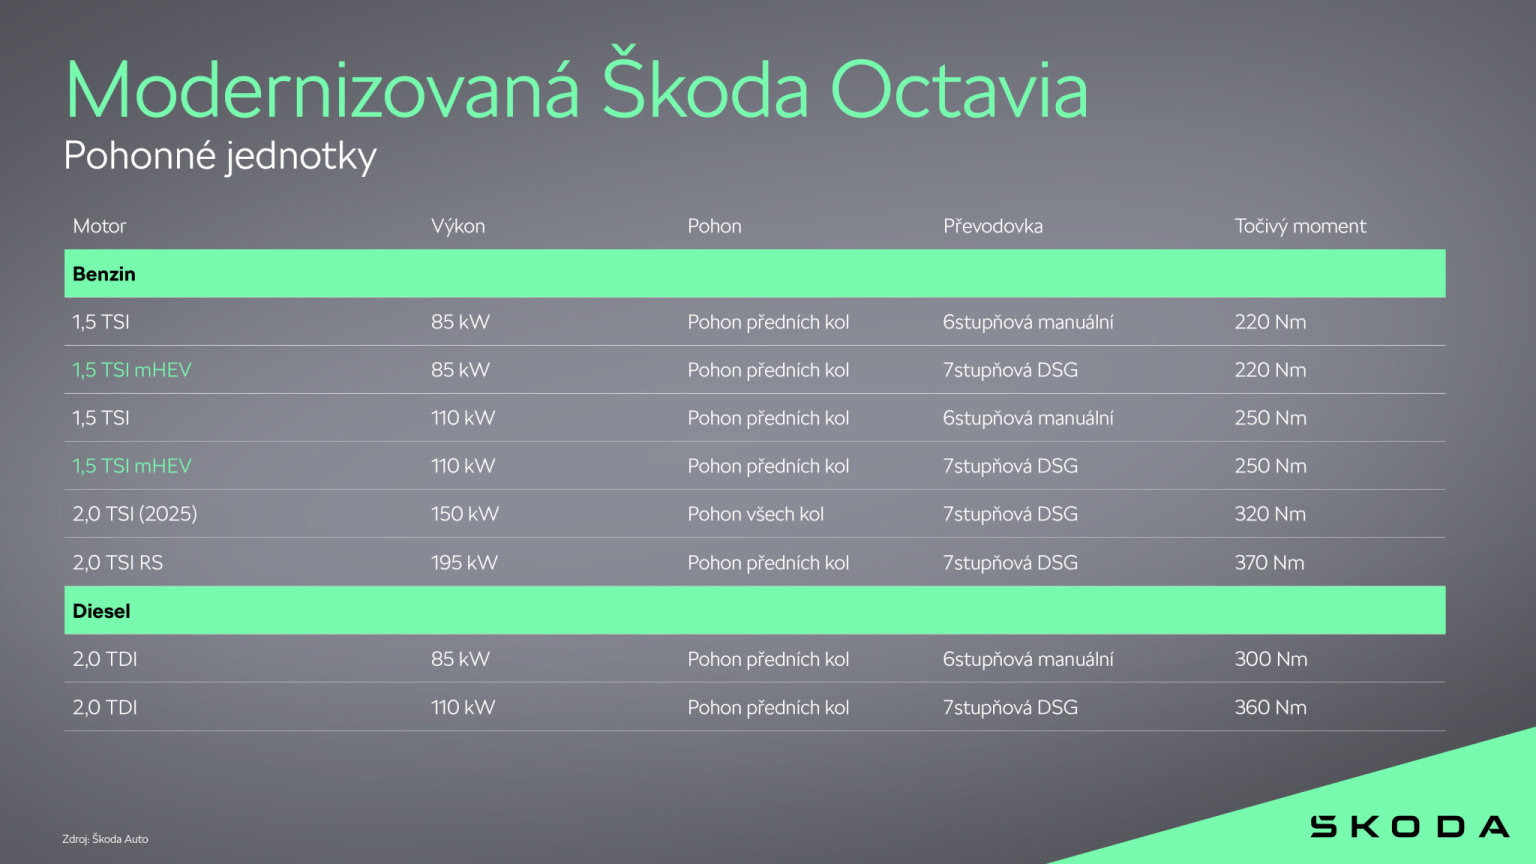 koda Octavia po modernizaci